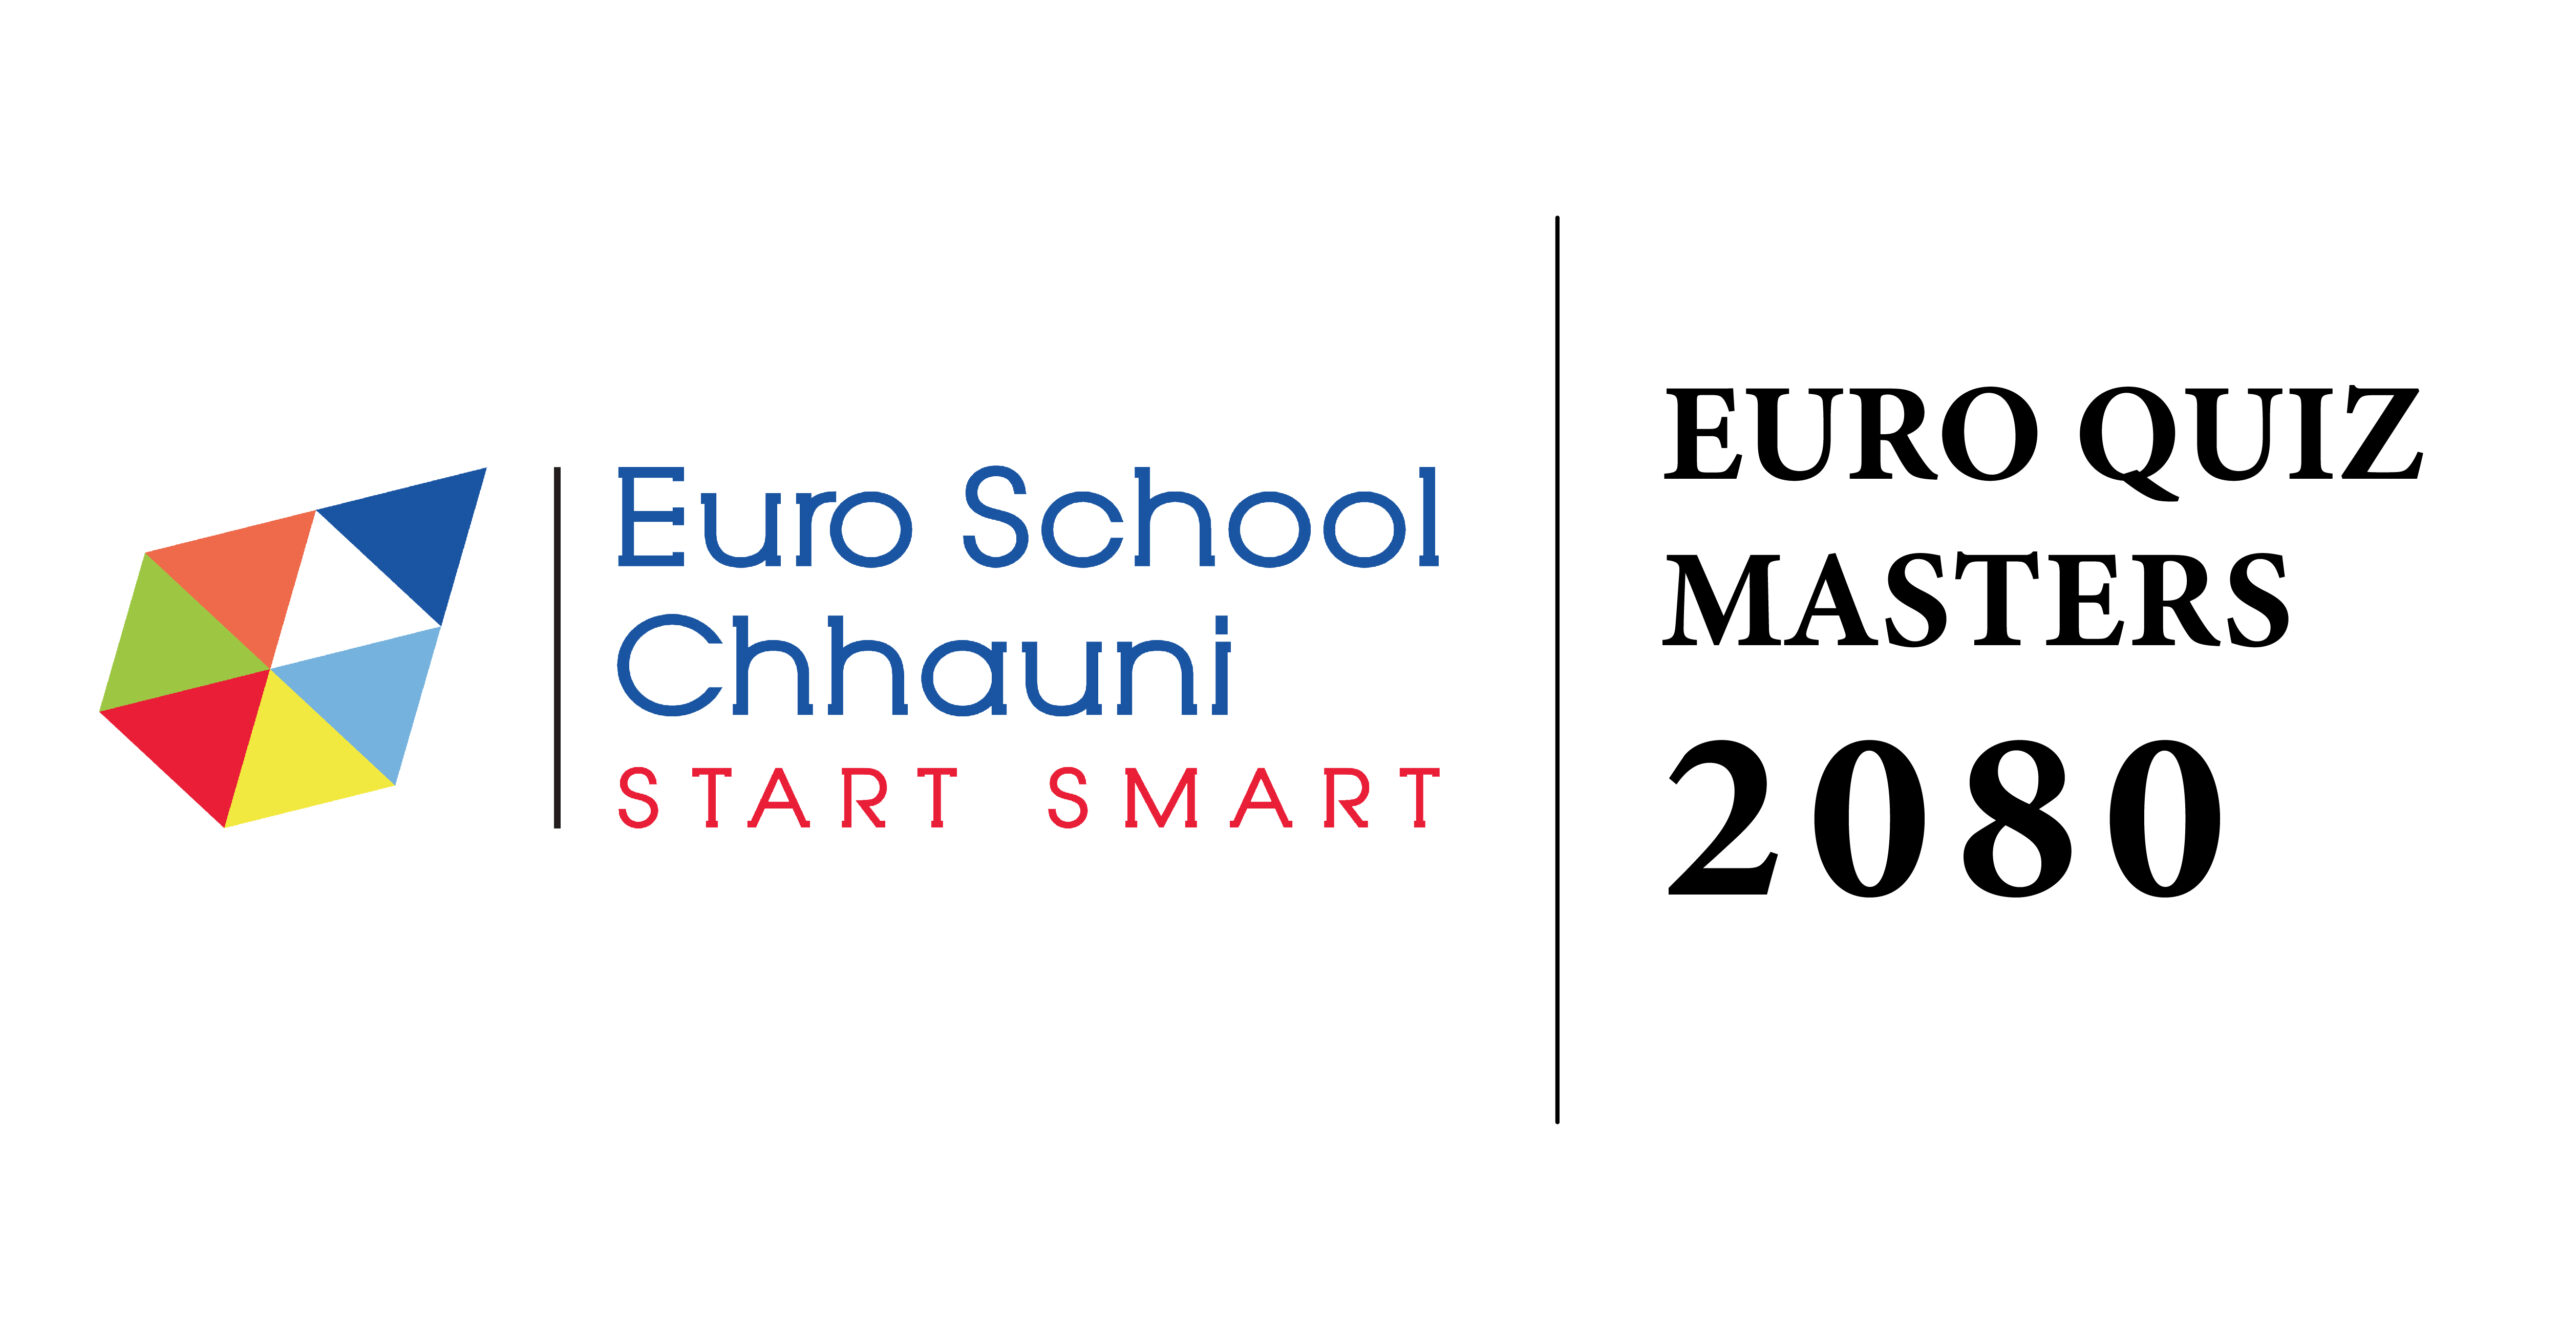 Euro Quiz Masters 2080 (Grade 4 to 9)